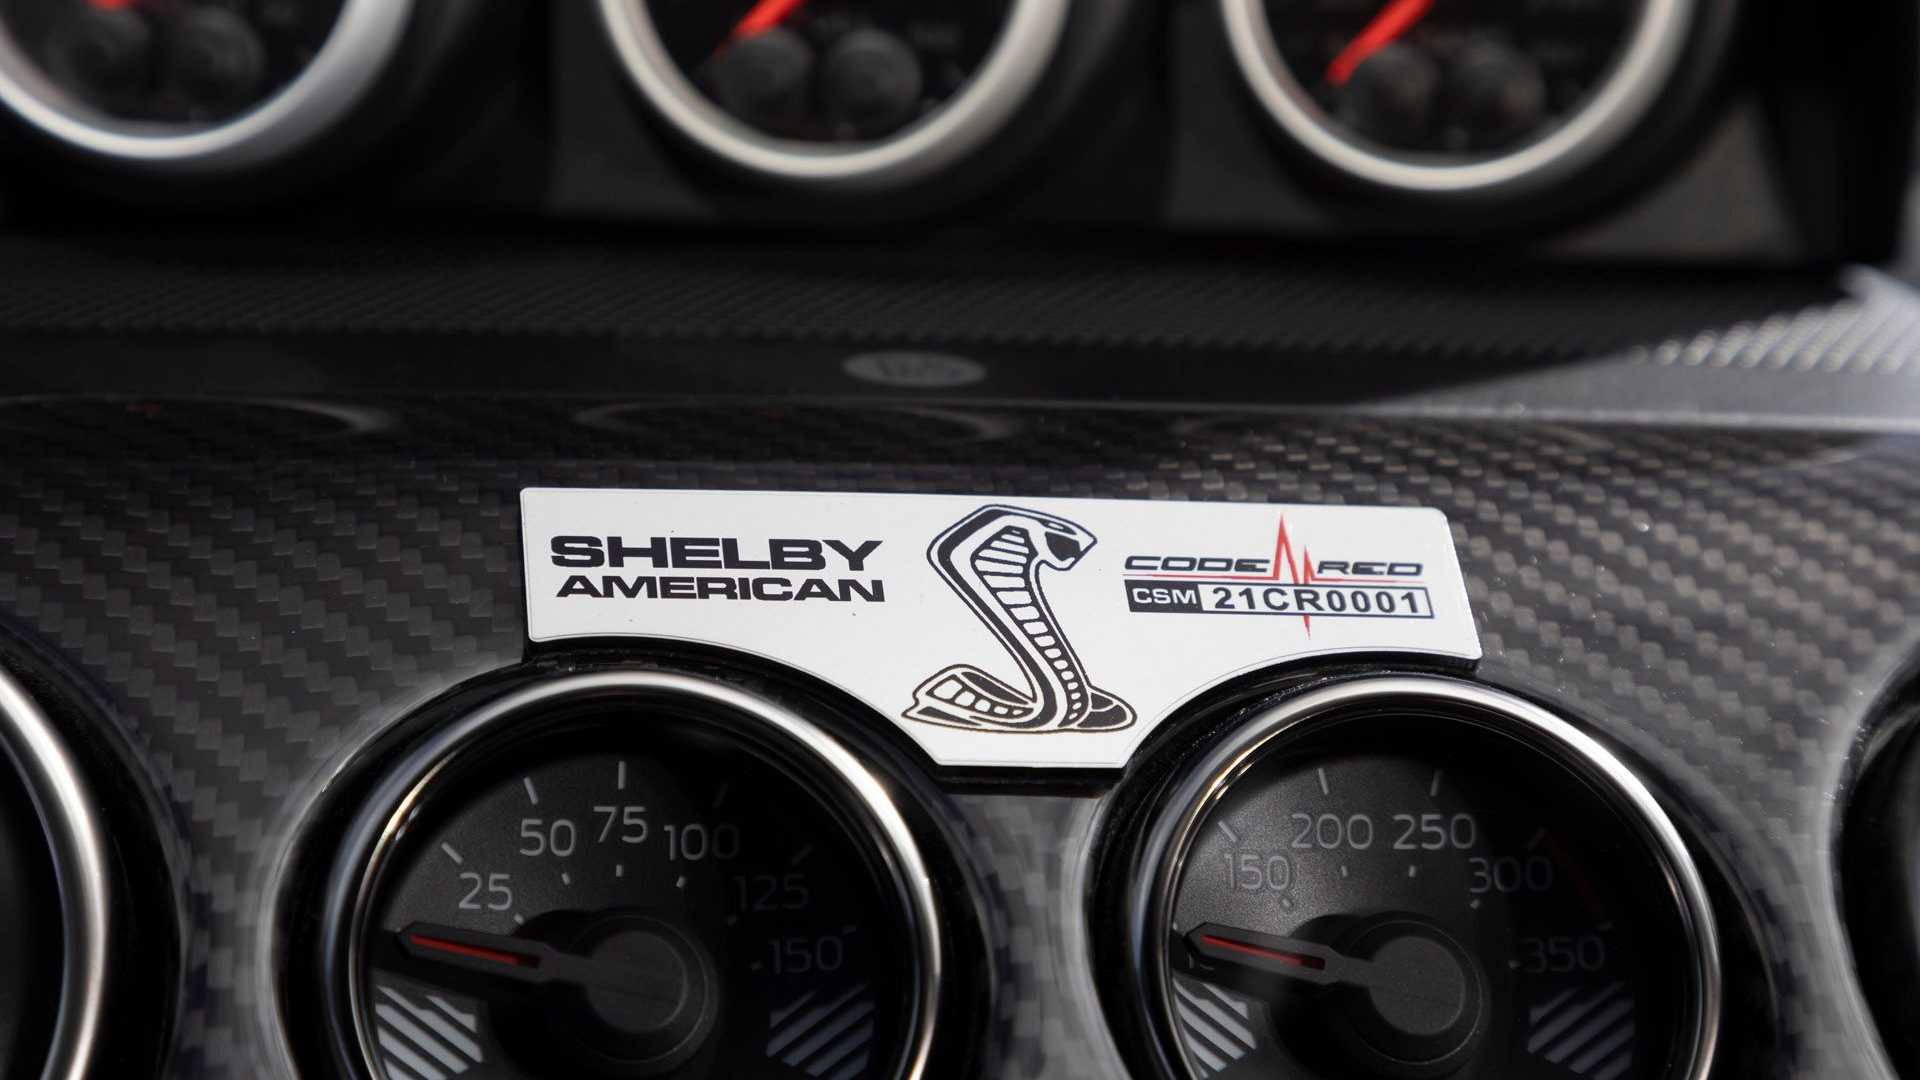 placa Shelby American no interior